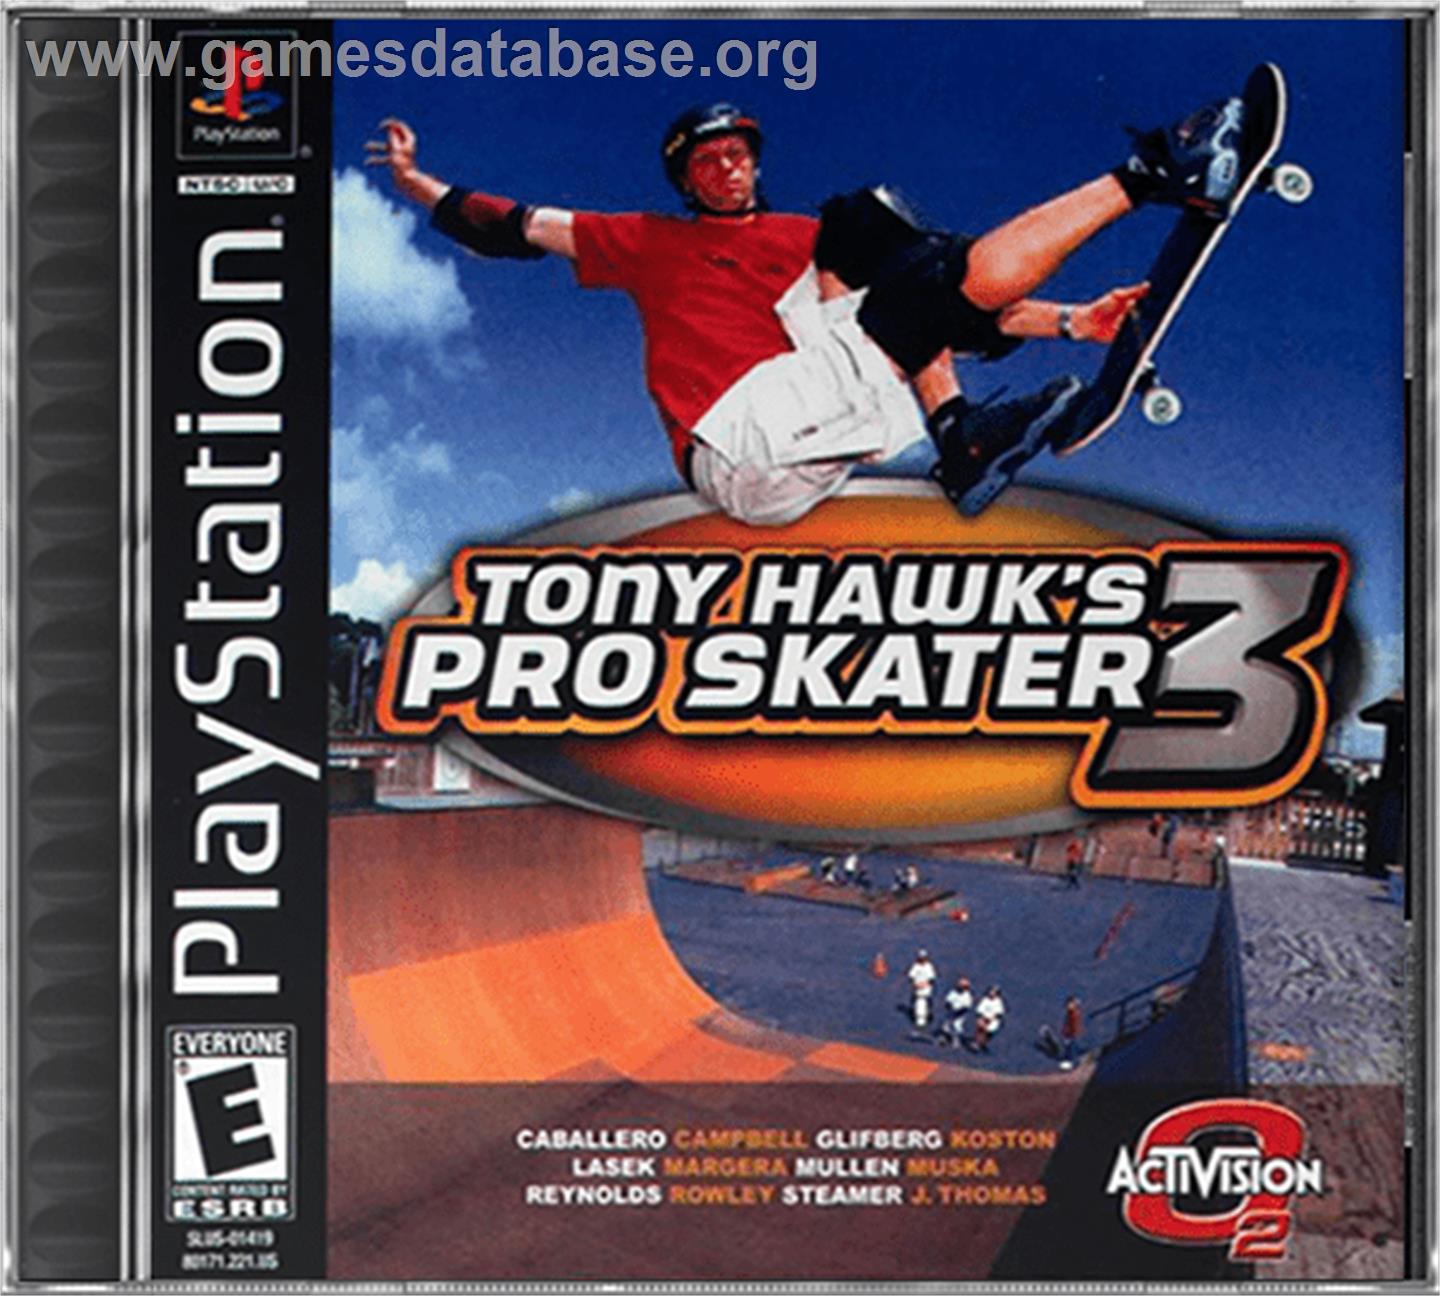 Tony Hawk's Pro Skater 3 - Sony Playstation - Artwork - Box